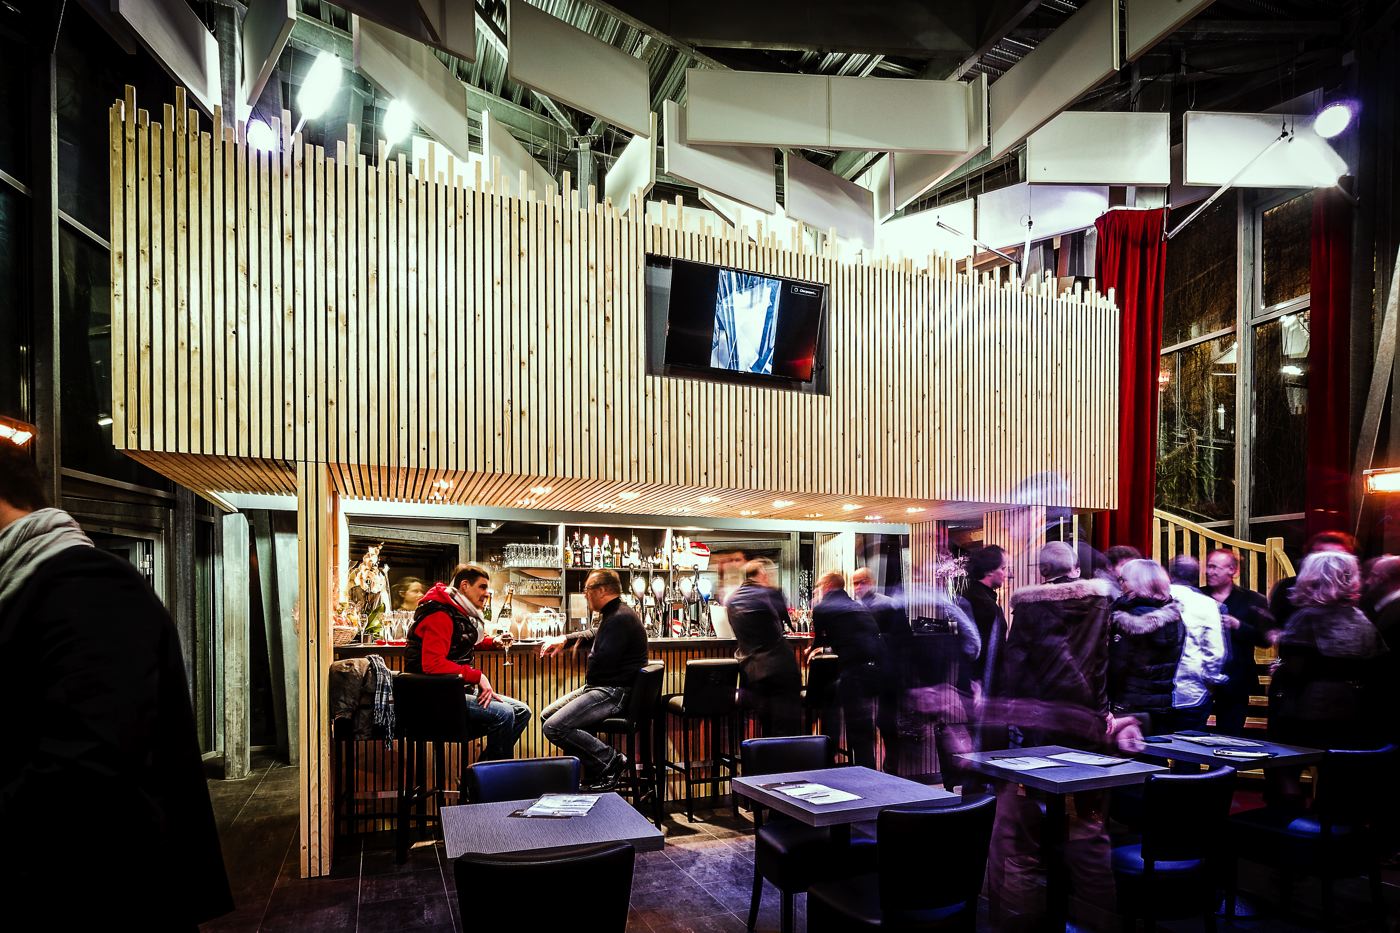 Lille: le restaurant L'Huîtrière racheté pour devenir une boutique de luxe   🦪 Lieu emblématique de Lille fermé depuis 2016, L'Huîtrière a été  rachetée par l'enseigne Louis Vuitton. L'ancien re